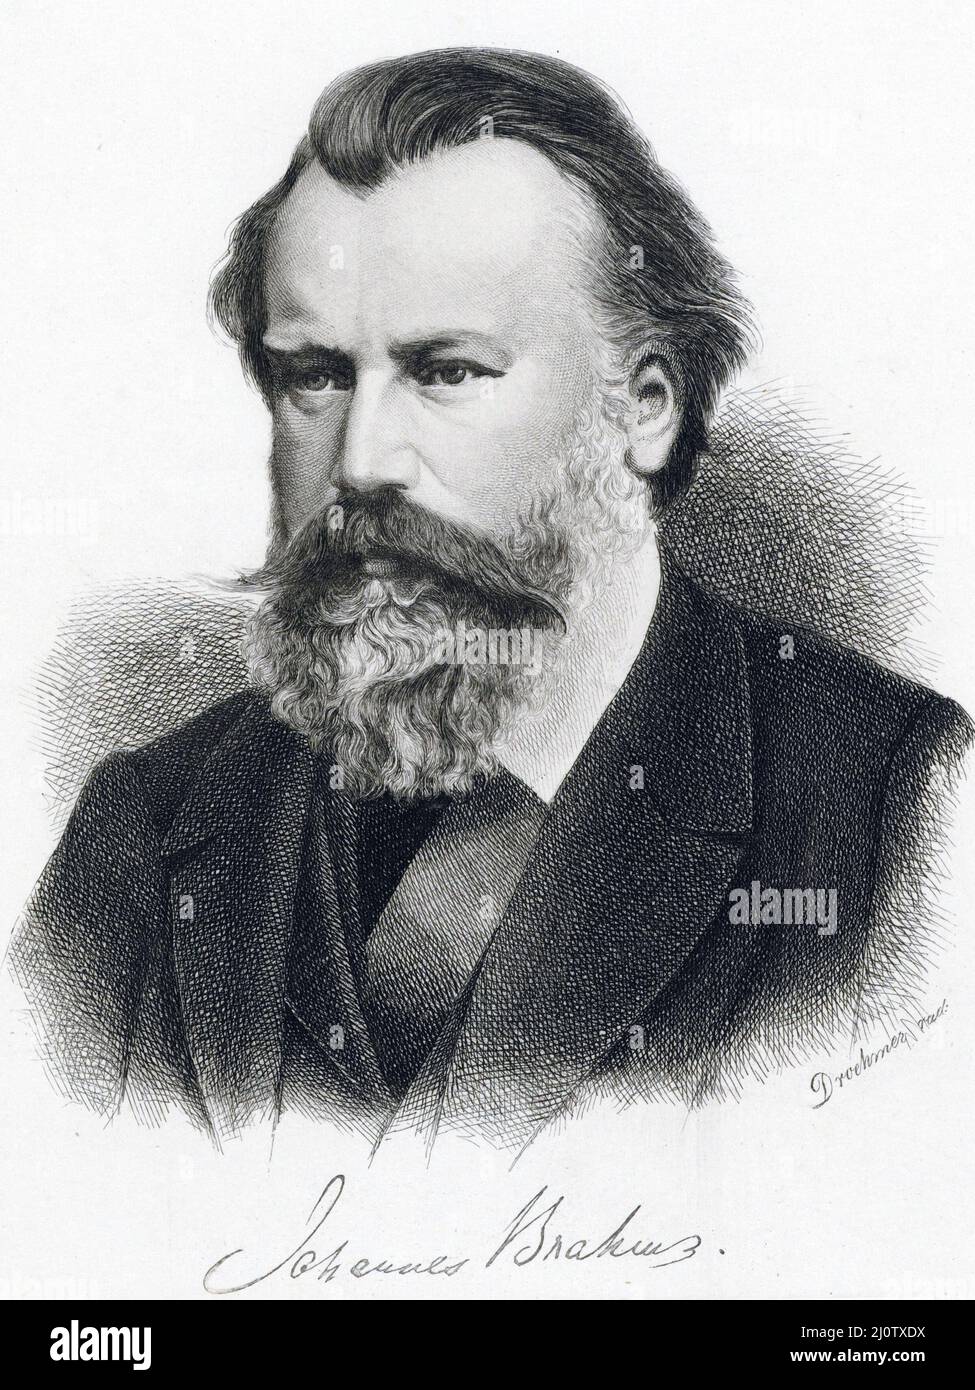 Porträt des deutschen Komponisten Johannes Brahms (*7. Mai 1833 in Hamburg; gestorben 3. April 1897 in Wien) Datum 1882 Stockfoto